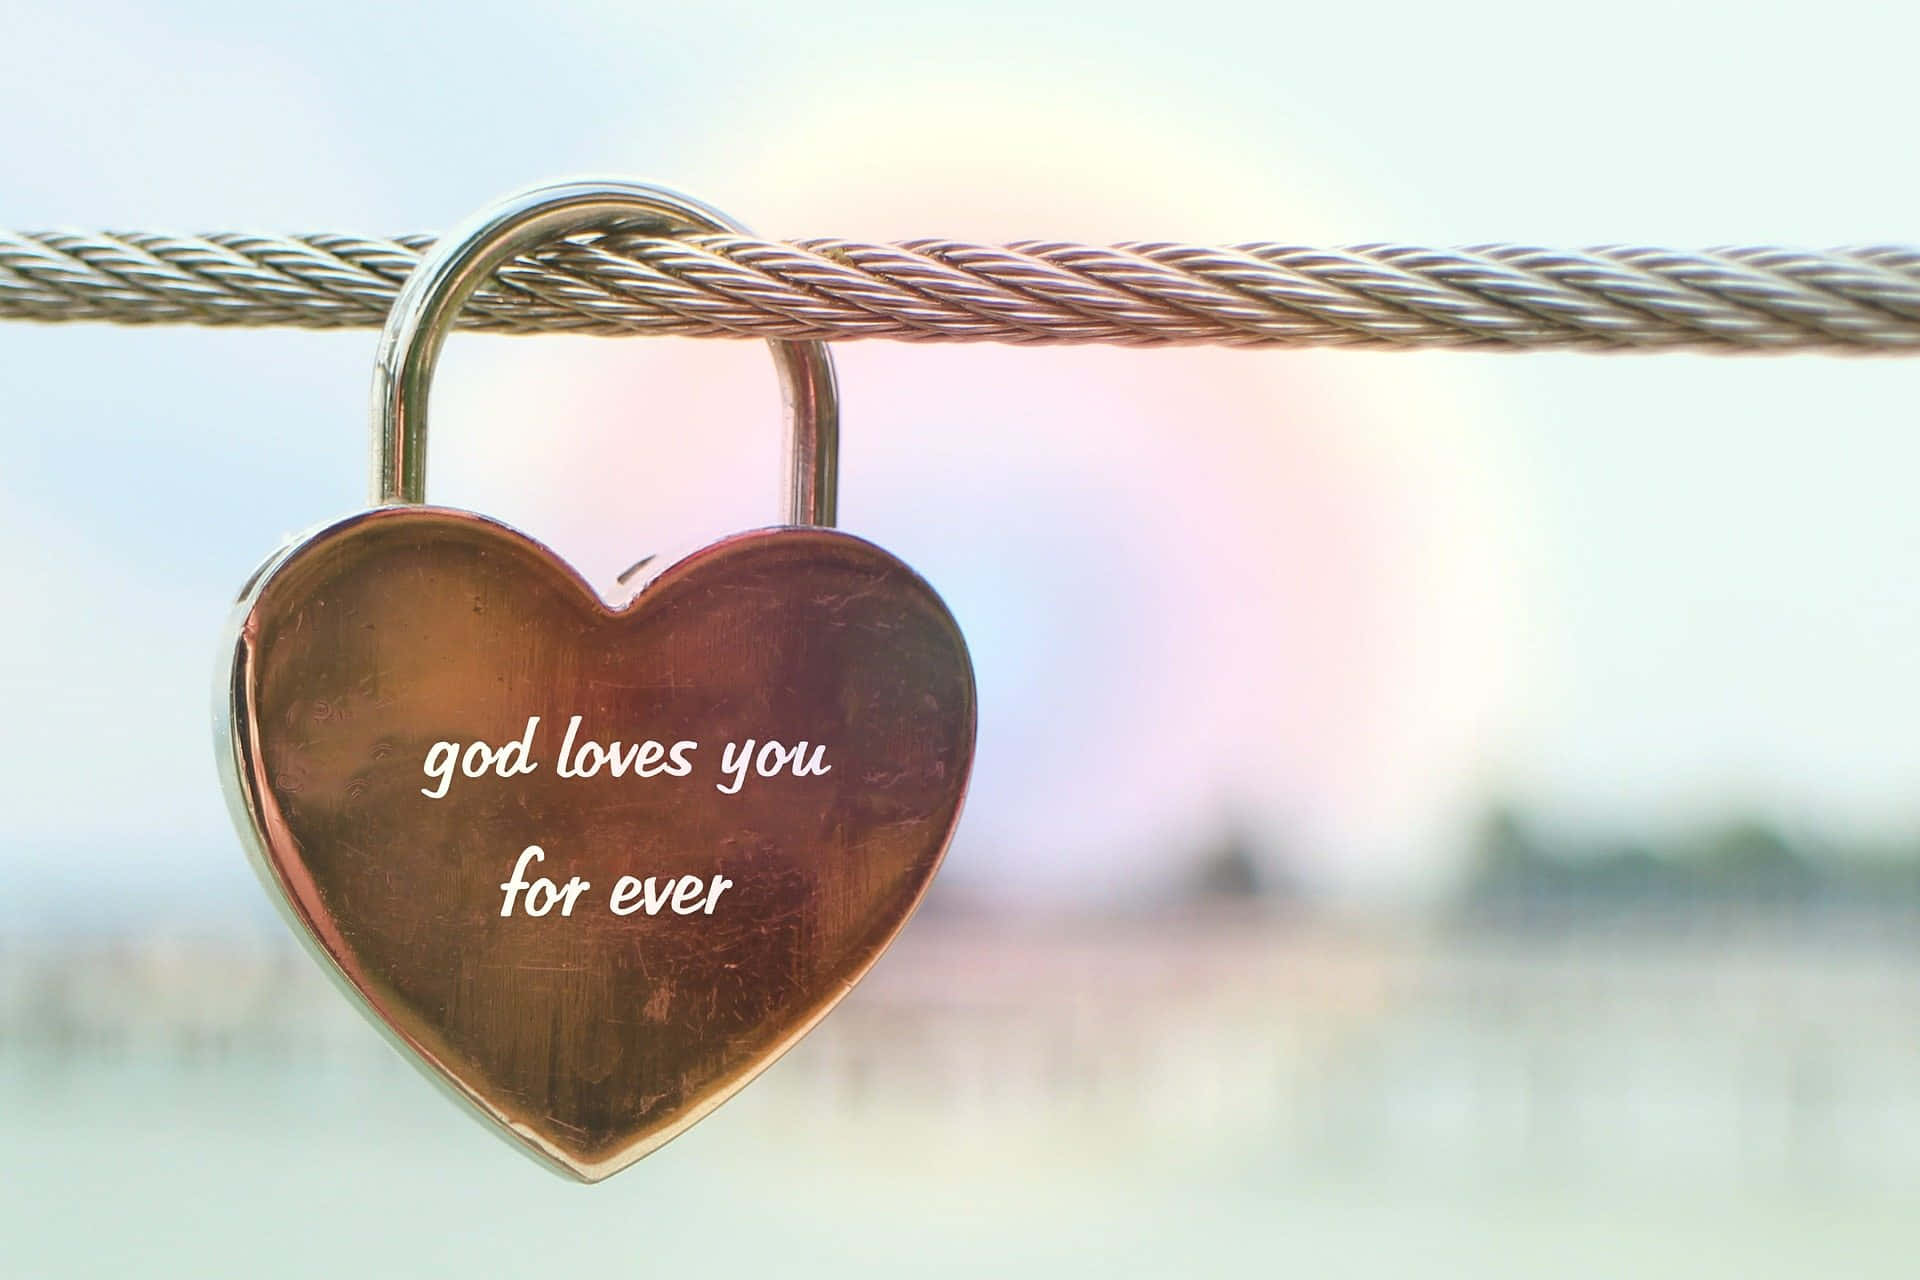 Glömaldrig Det: Gud Älskar Dig. Wallpaper